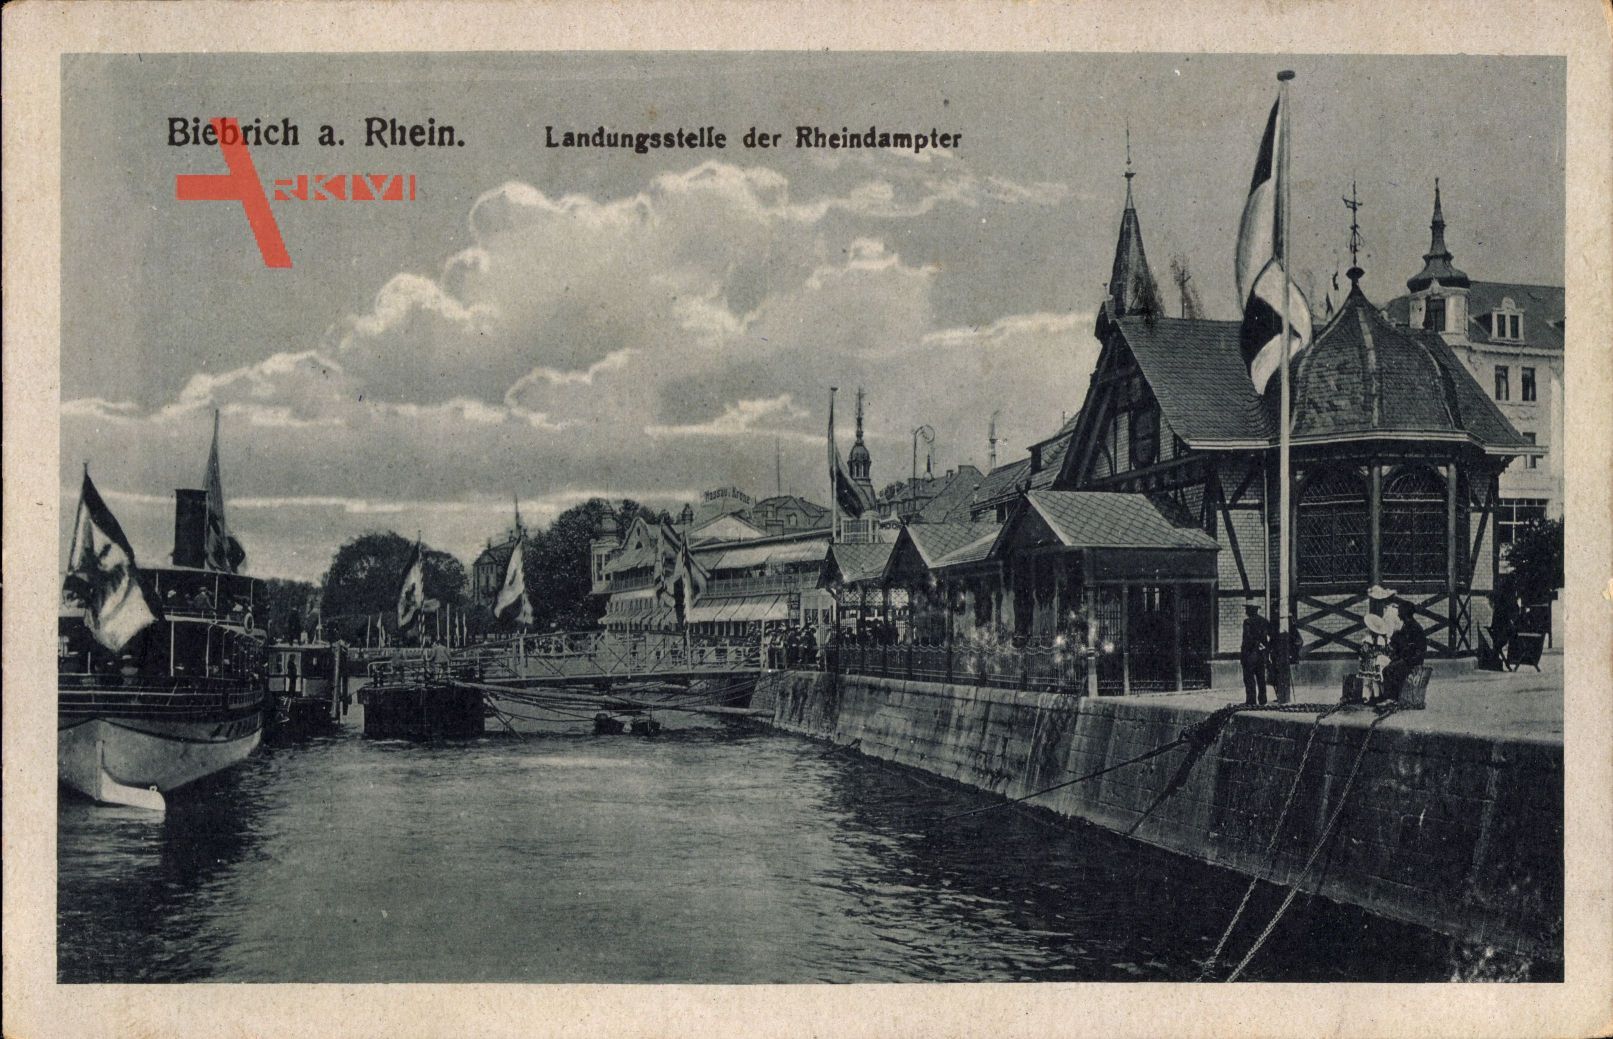 Biebrich am Rhein, Landungsstelle der Rheindampfer, Brücke, Fahnen